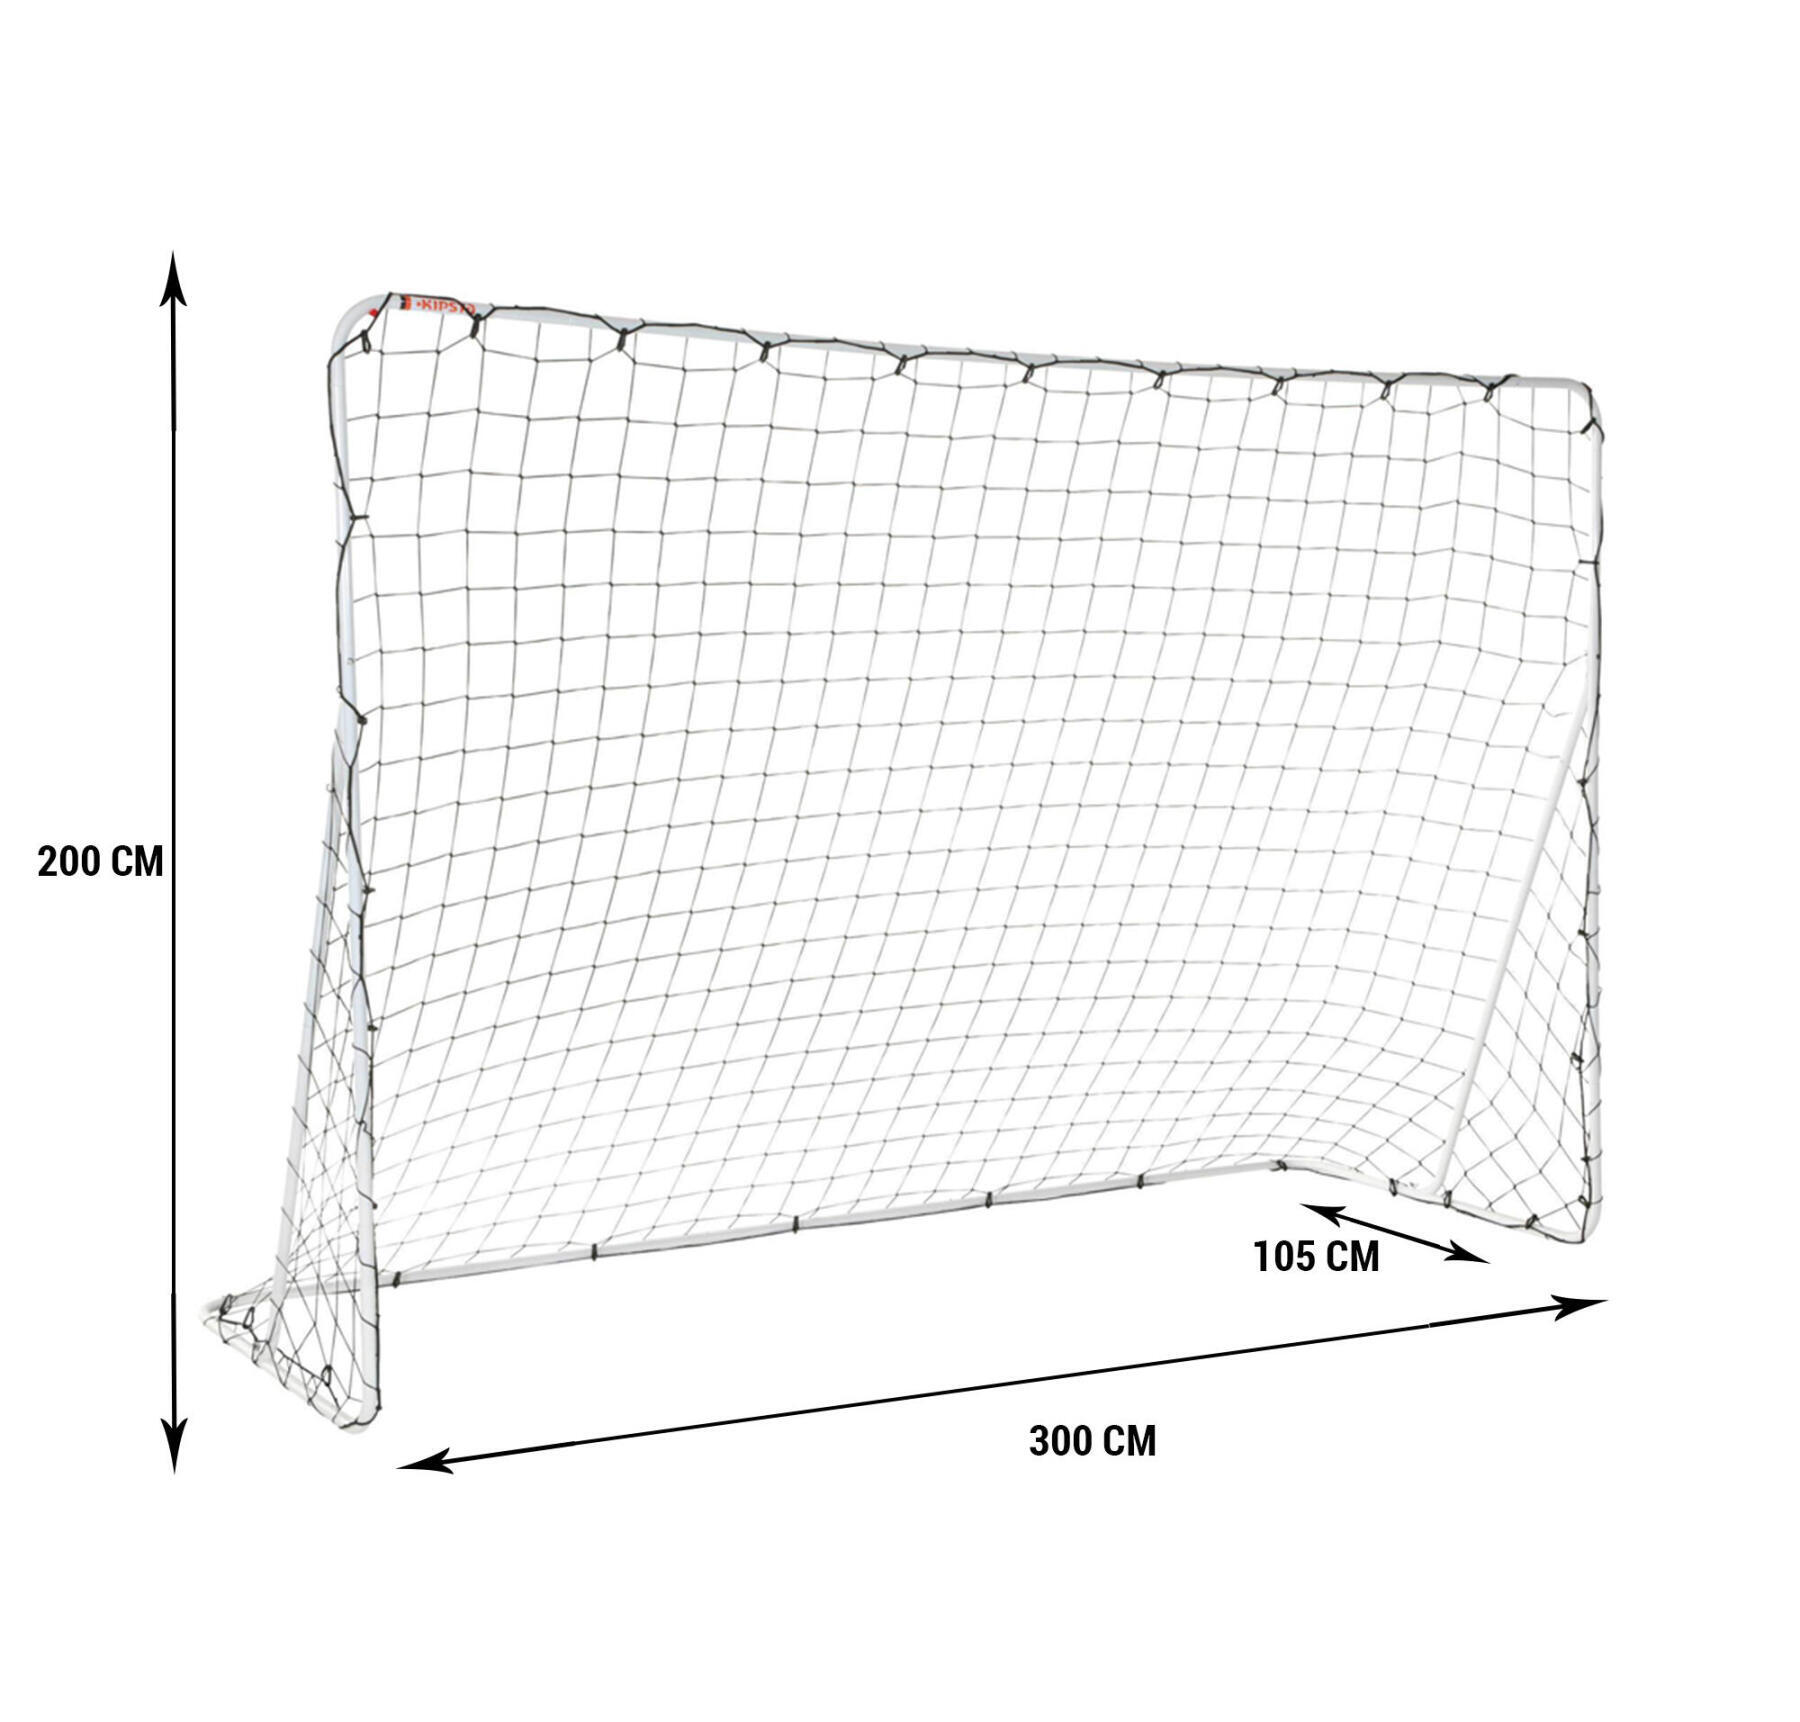 SG100 white size S football goal (Basic Goal)